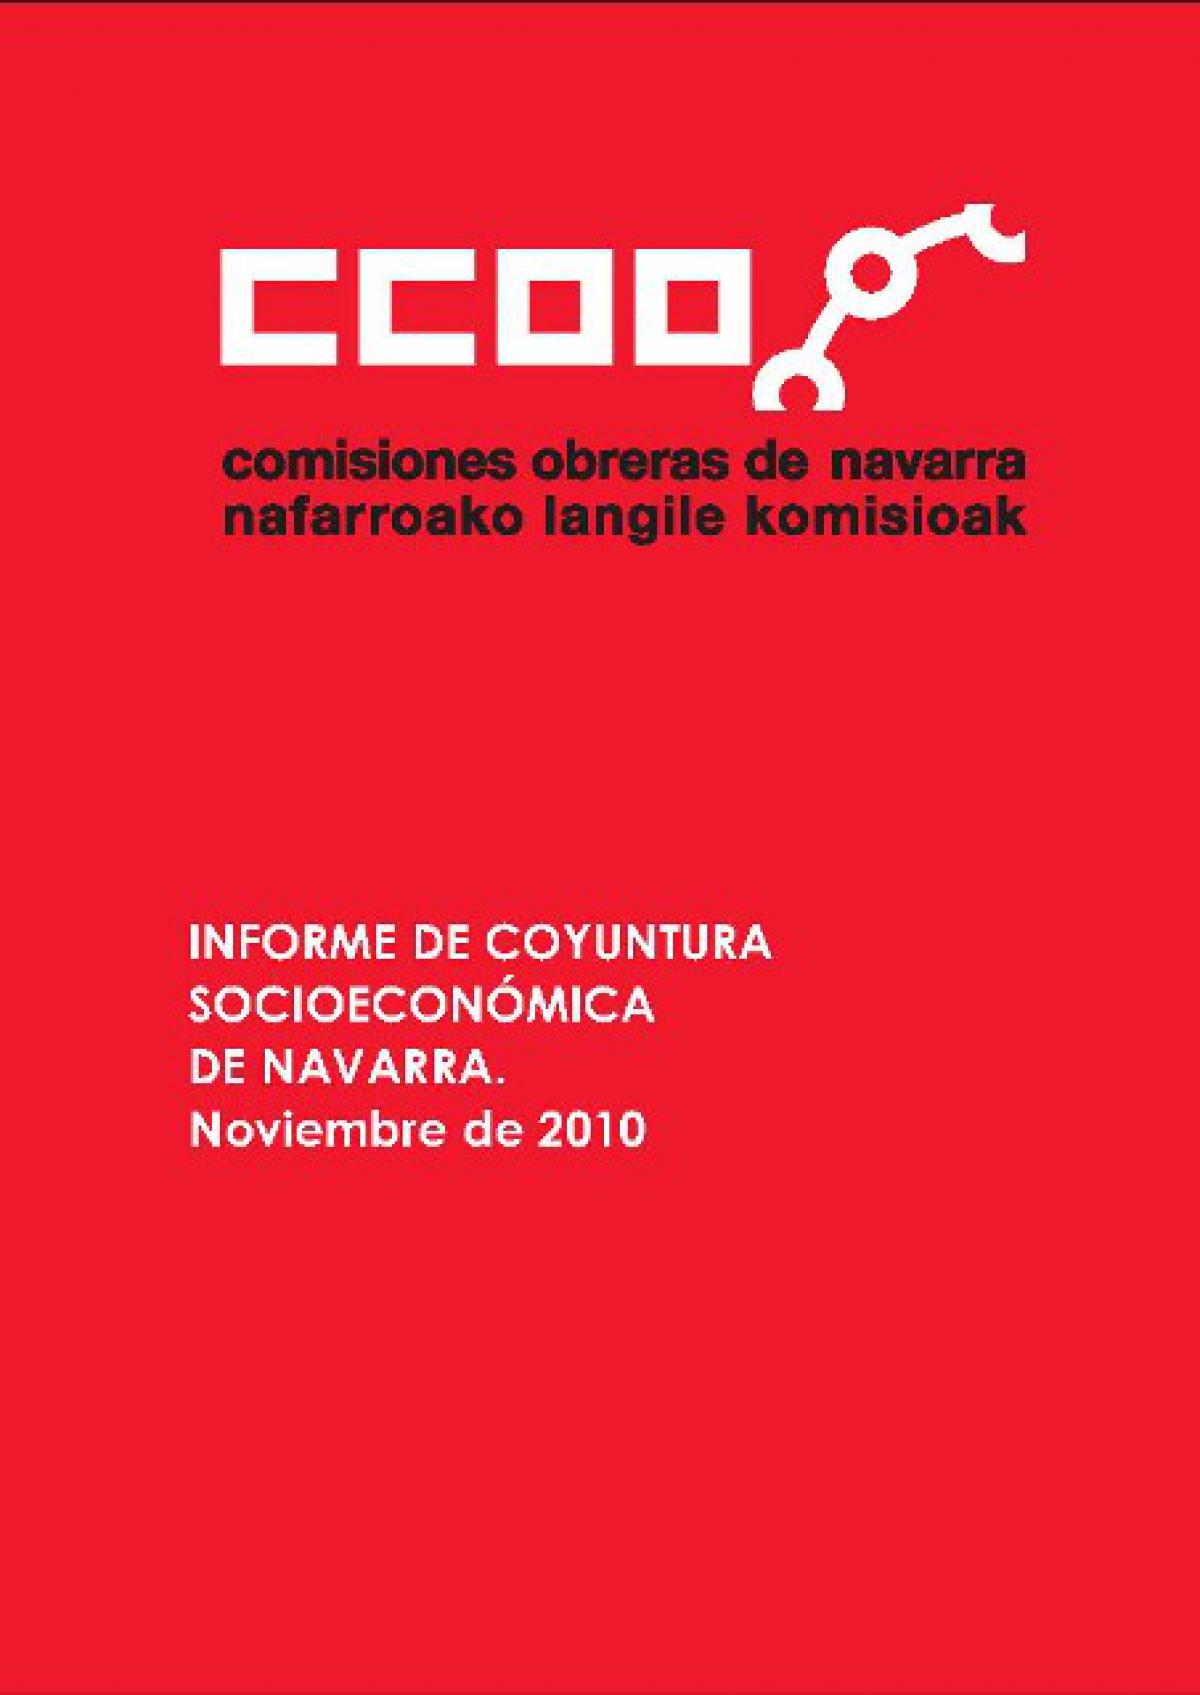 informe de coyuntura socioeconómica de navarra. noviembre 2010